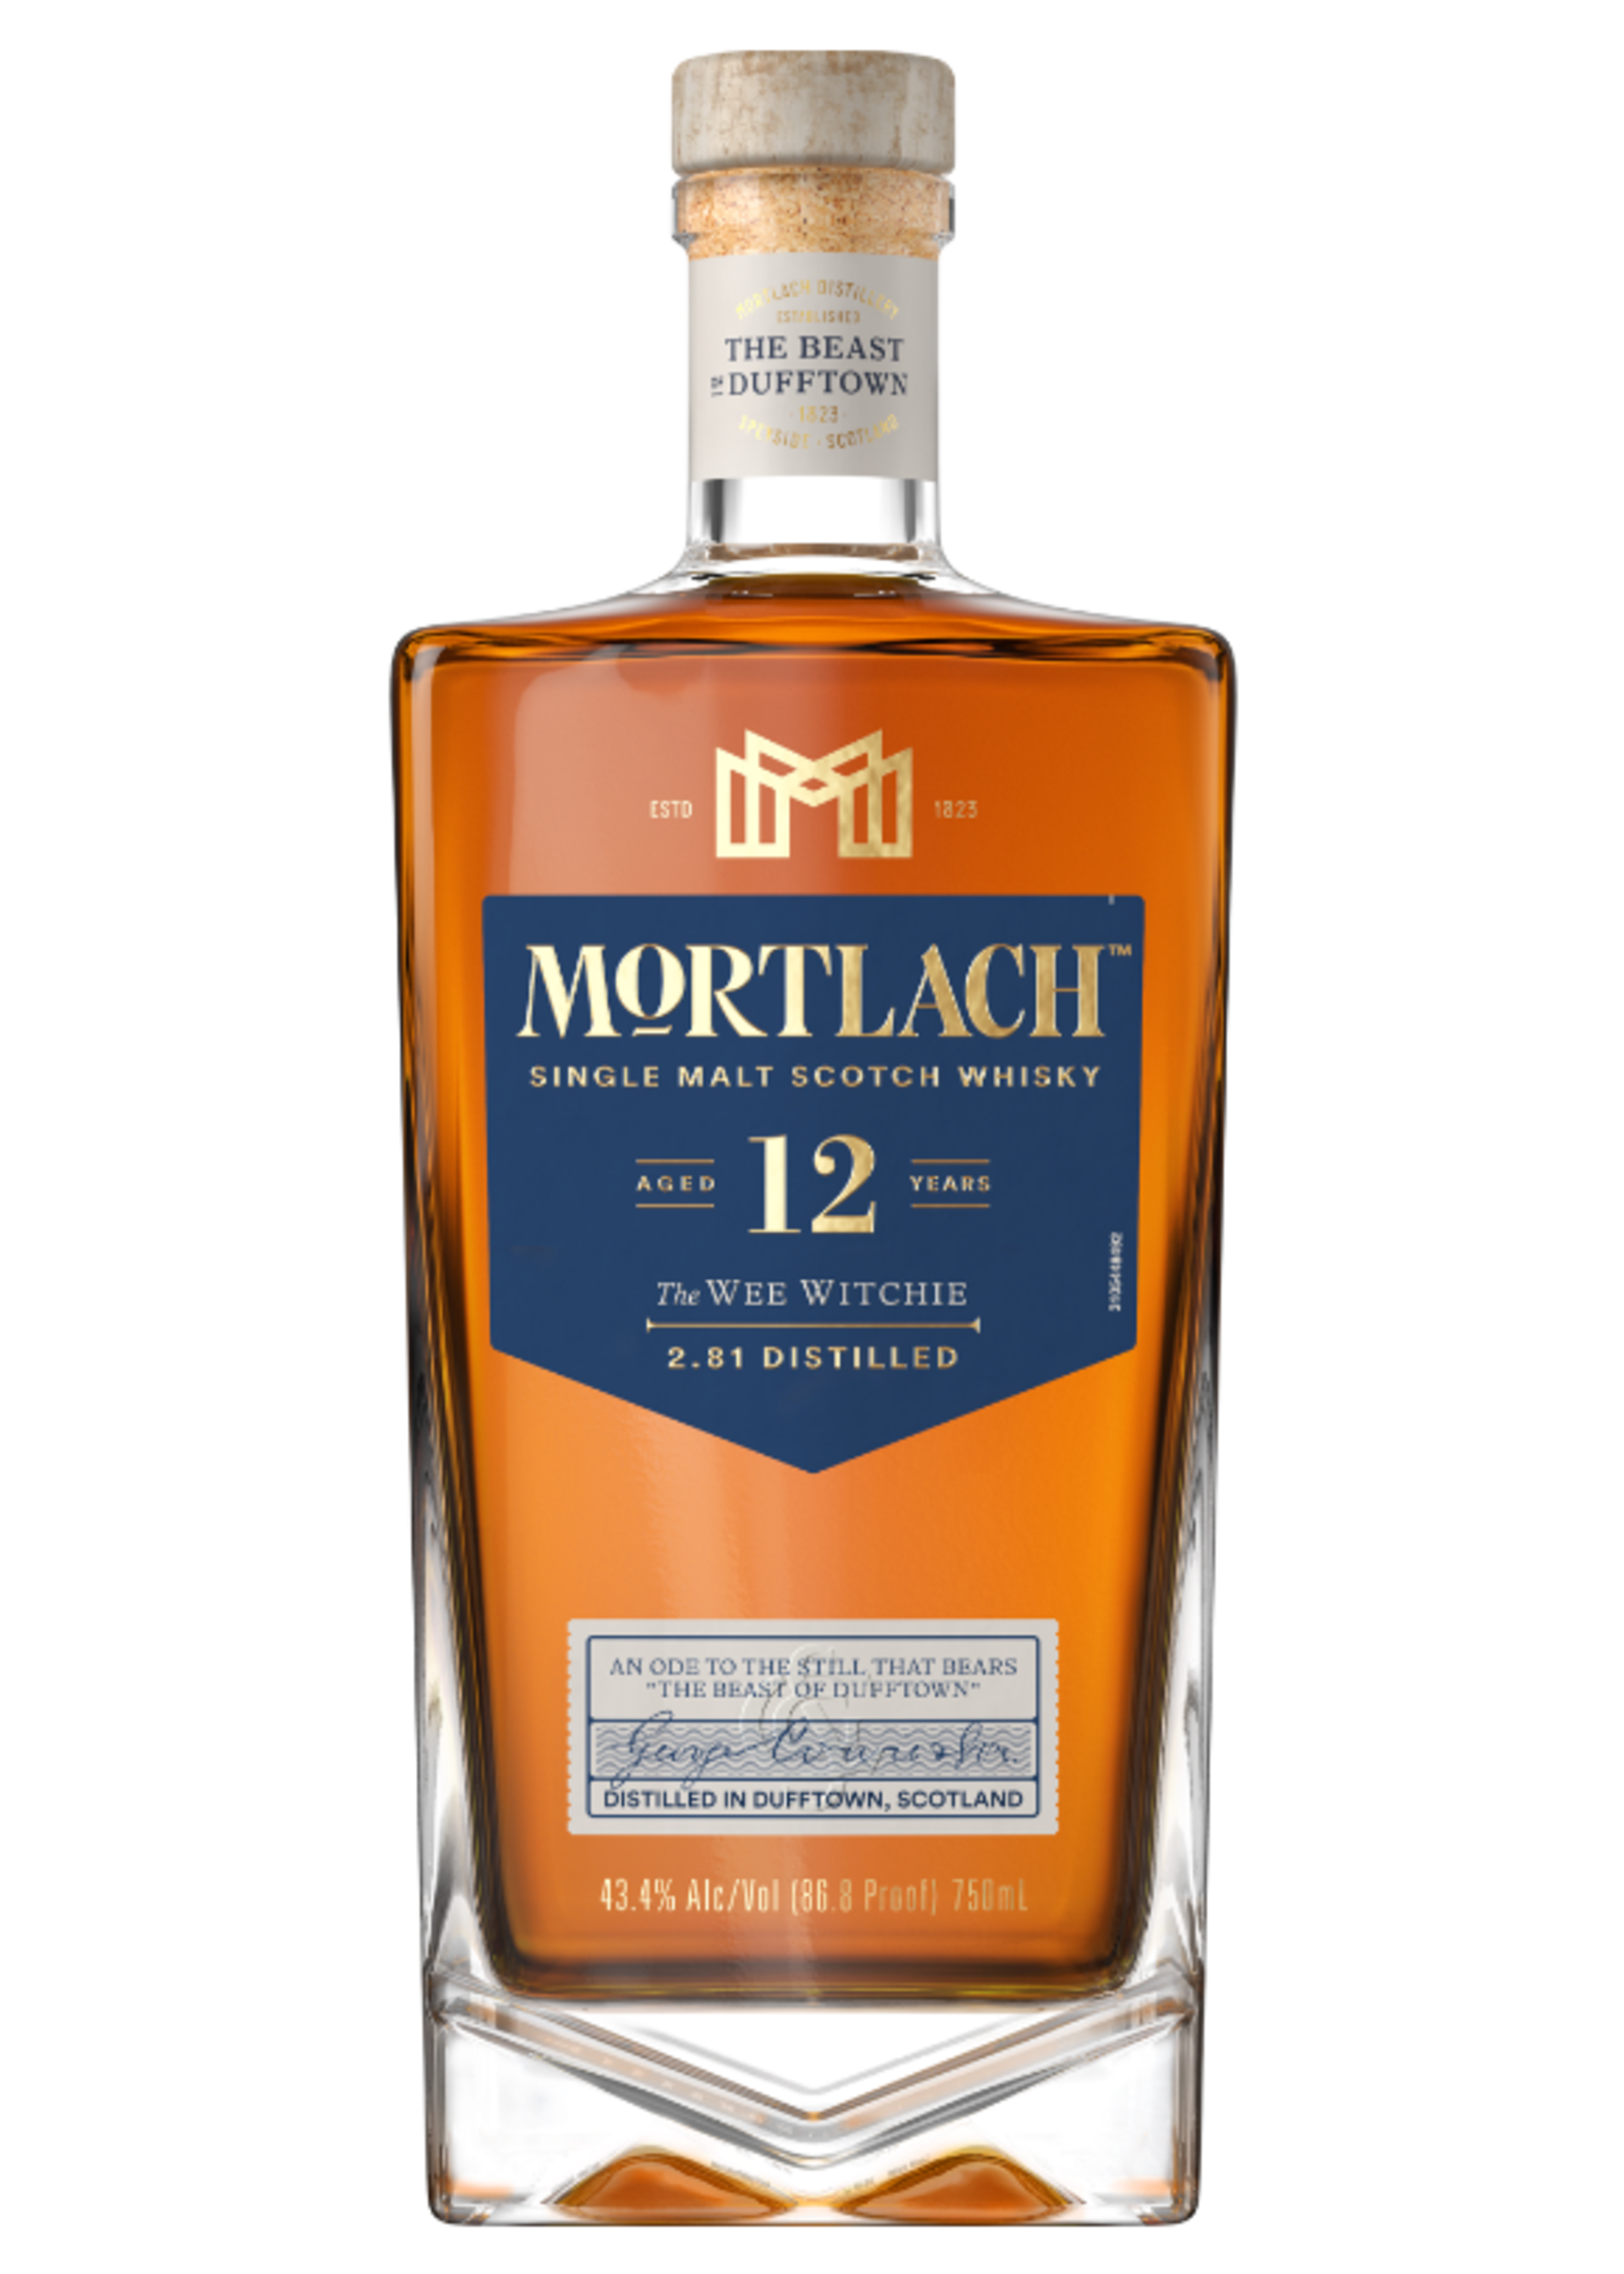 Mortlach Mortlach / 12 Year Single Malt Scotch Whisky 43.4% abv / 750mL